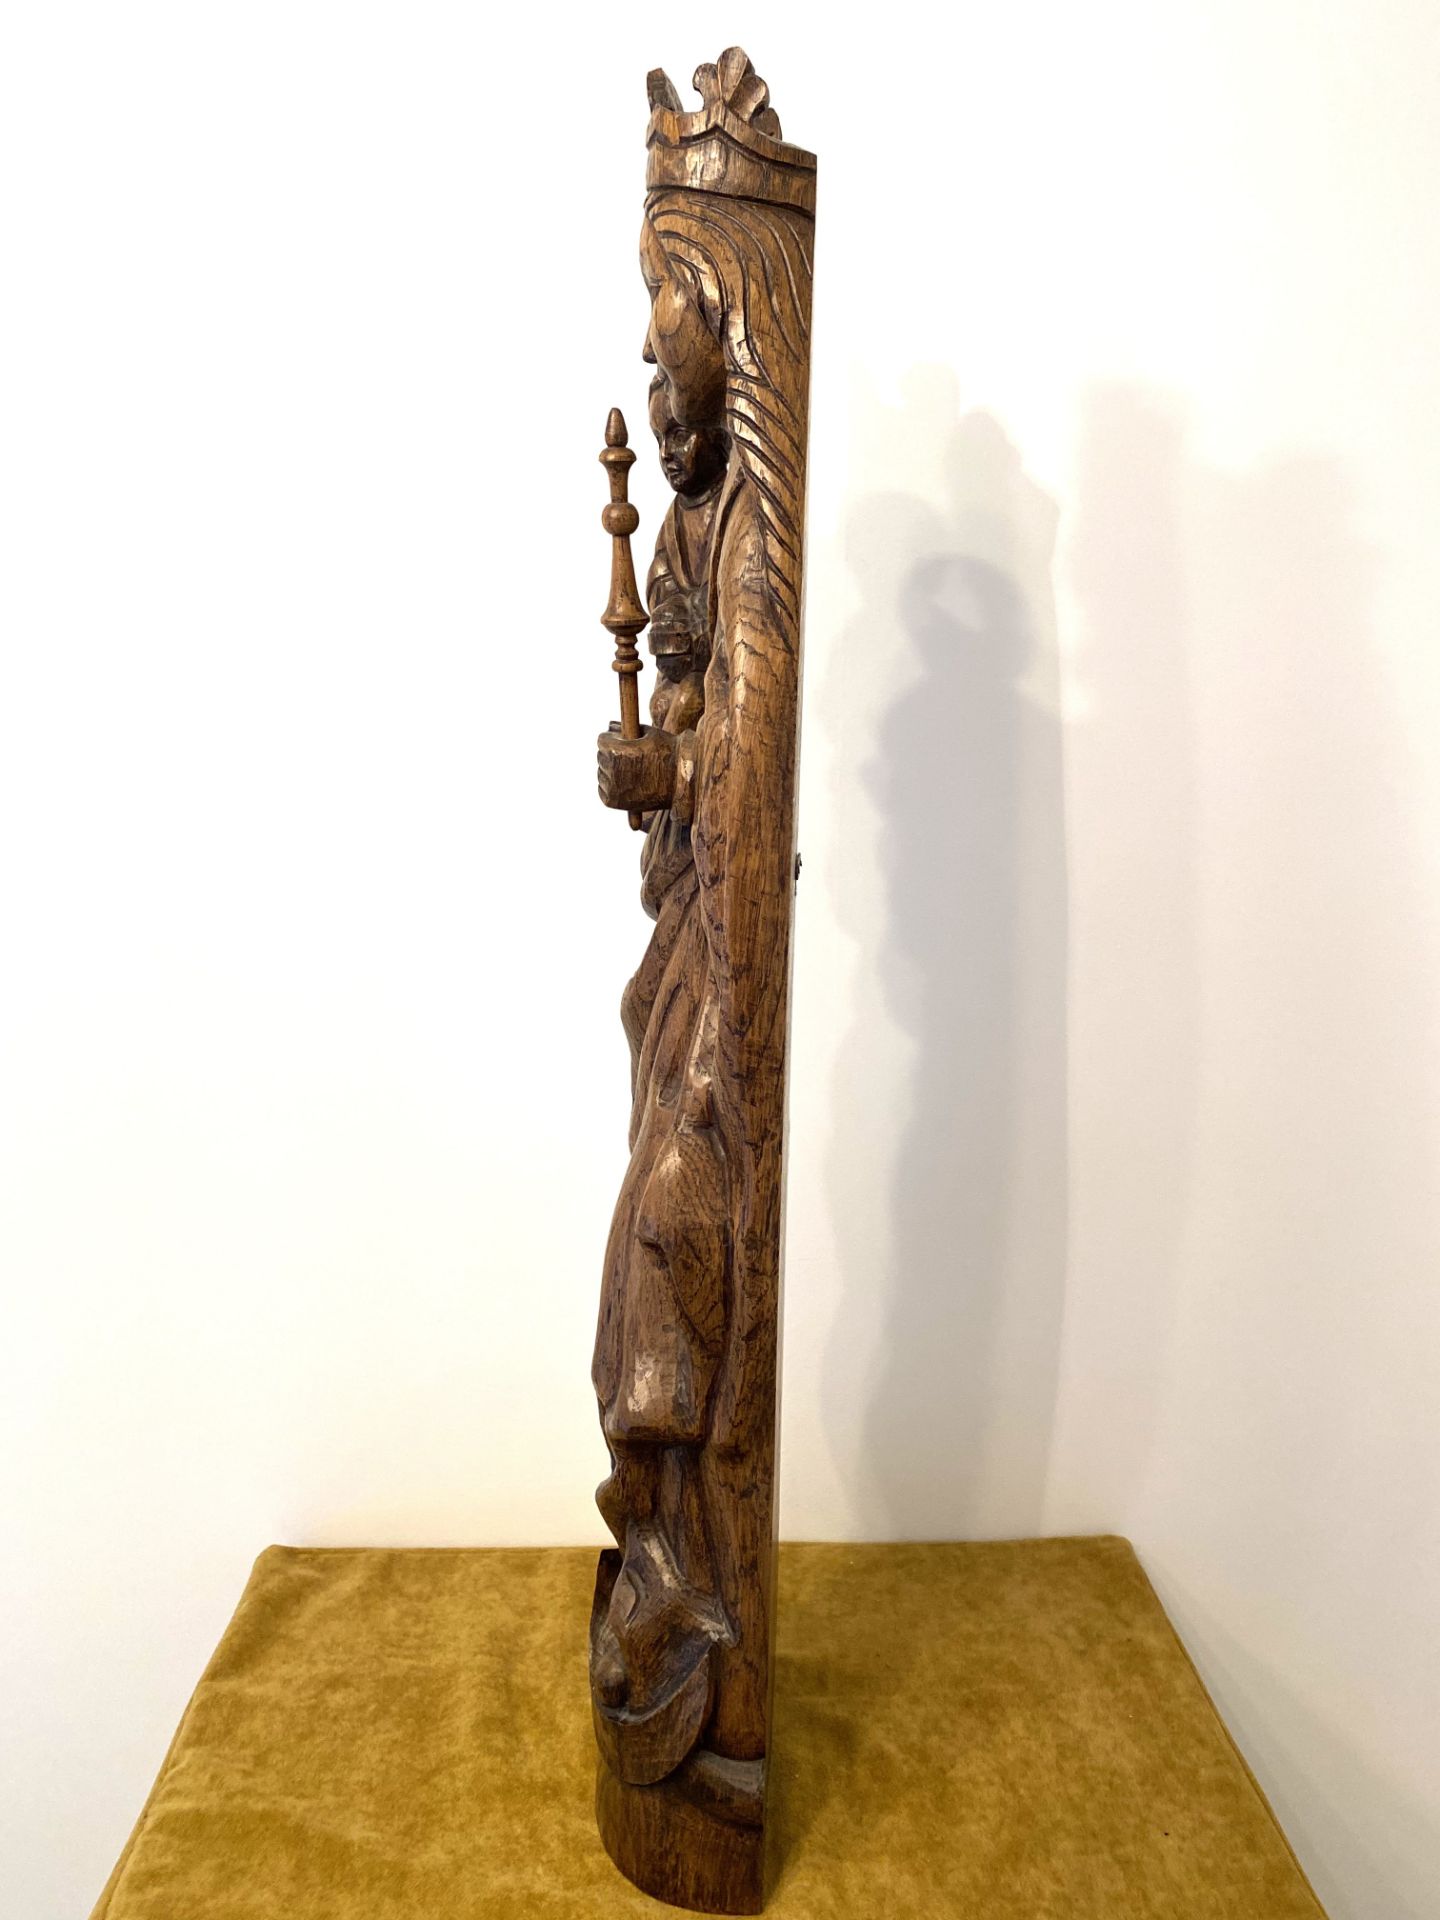 Wooden Sculpture Devotionalia - Image 5 of 5